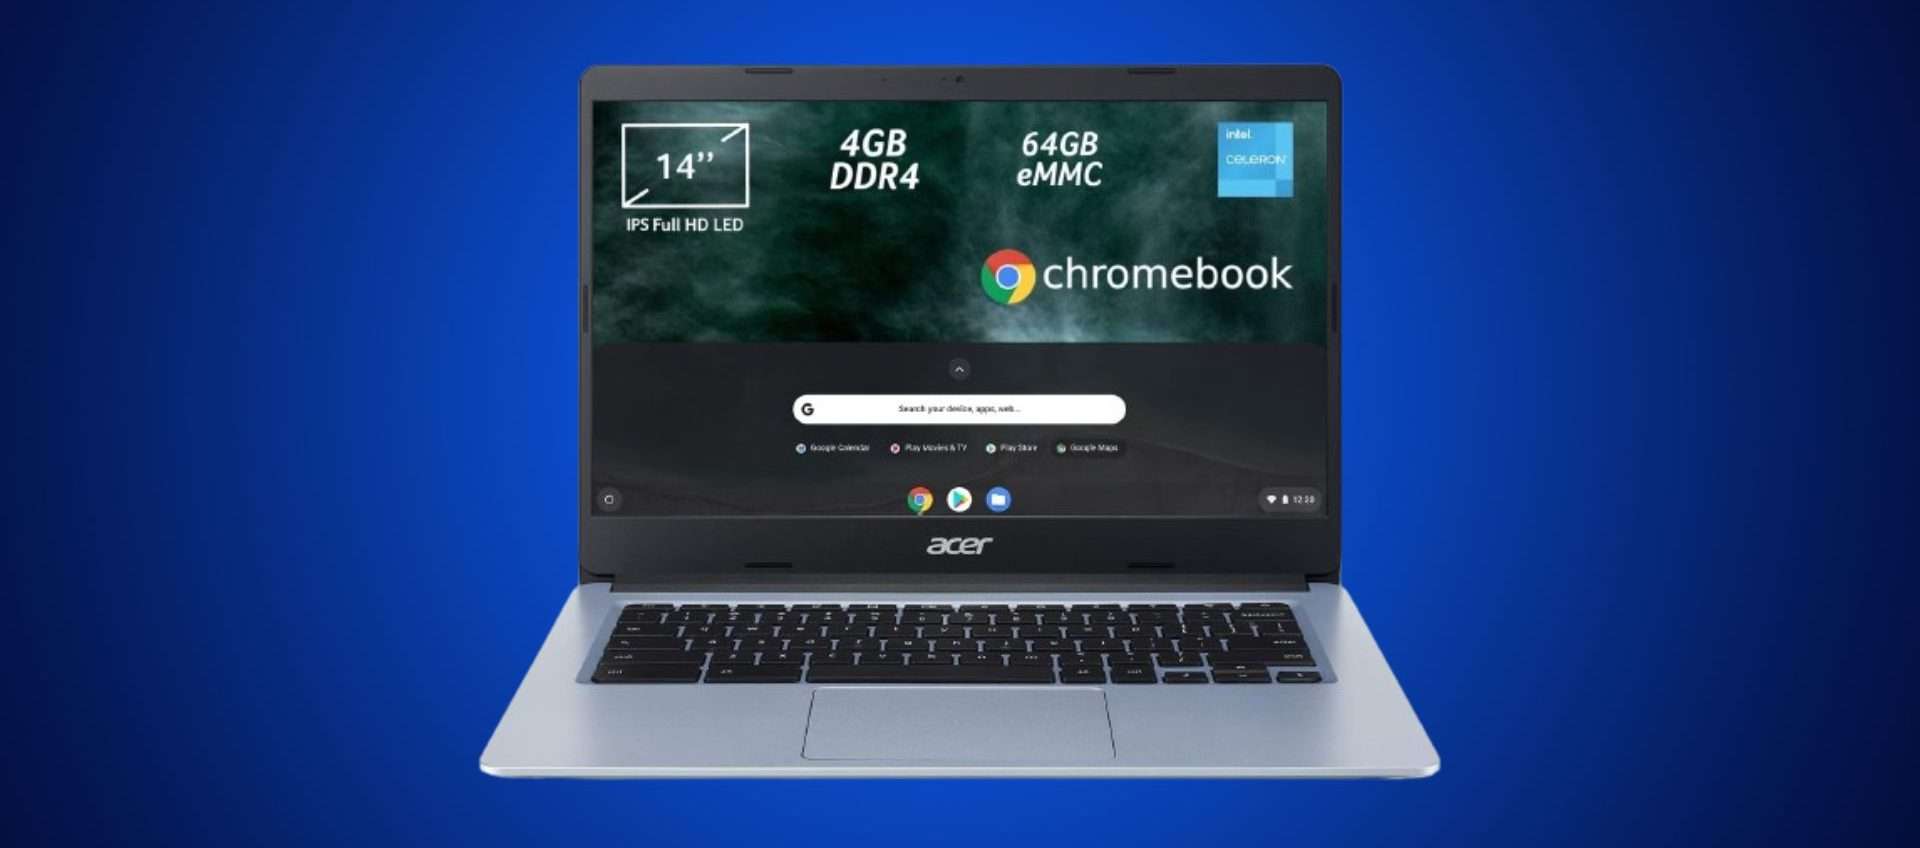 Solo199€ per l'Acer Chromebook 314: offerta bomba, ma c'è poco tempo